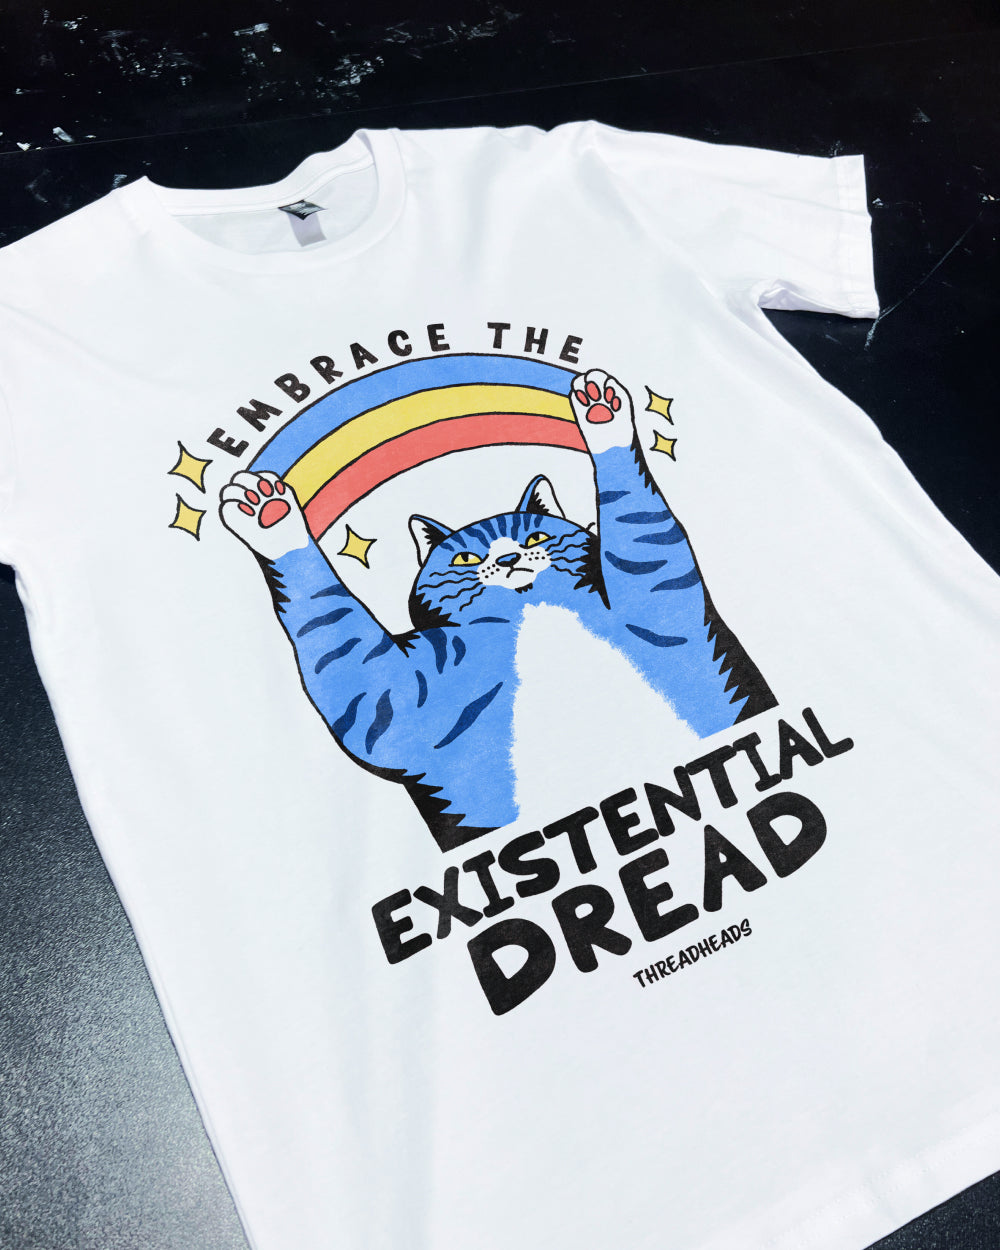 Embrace the Existential Dread T-Shirt Australia Online #colour_white